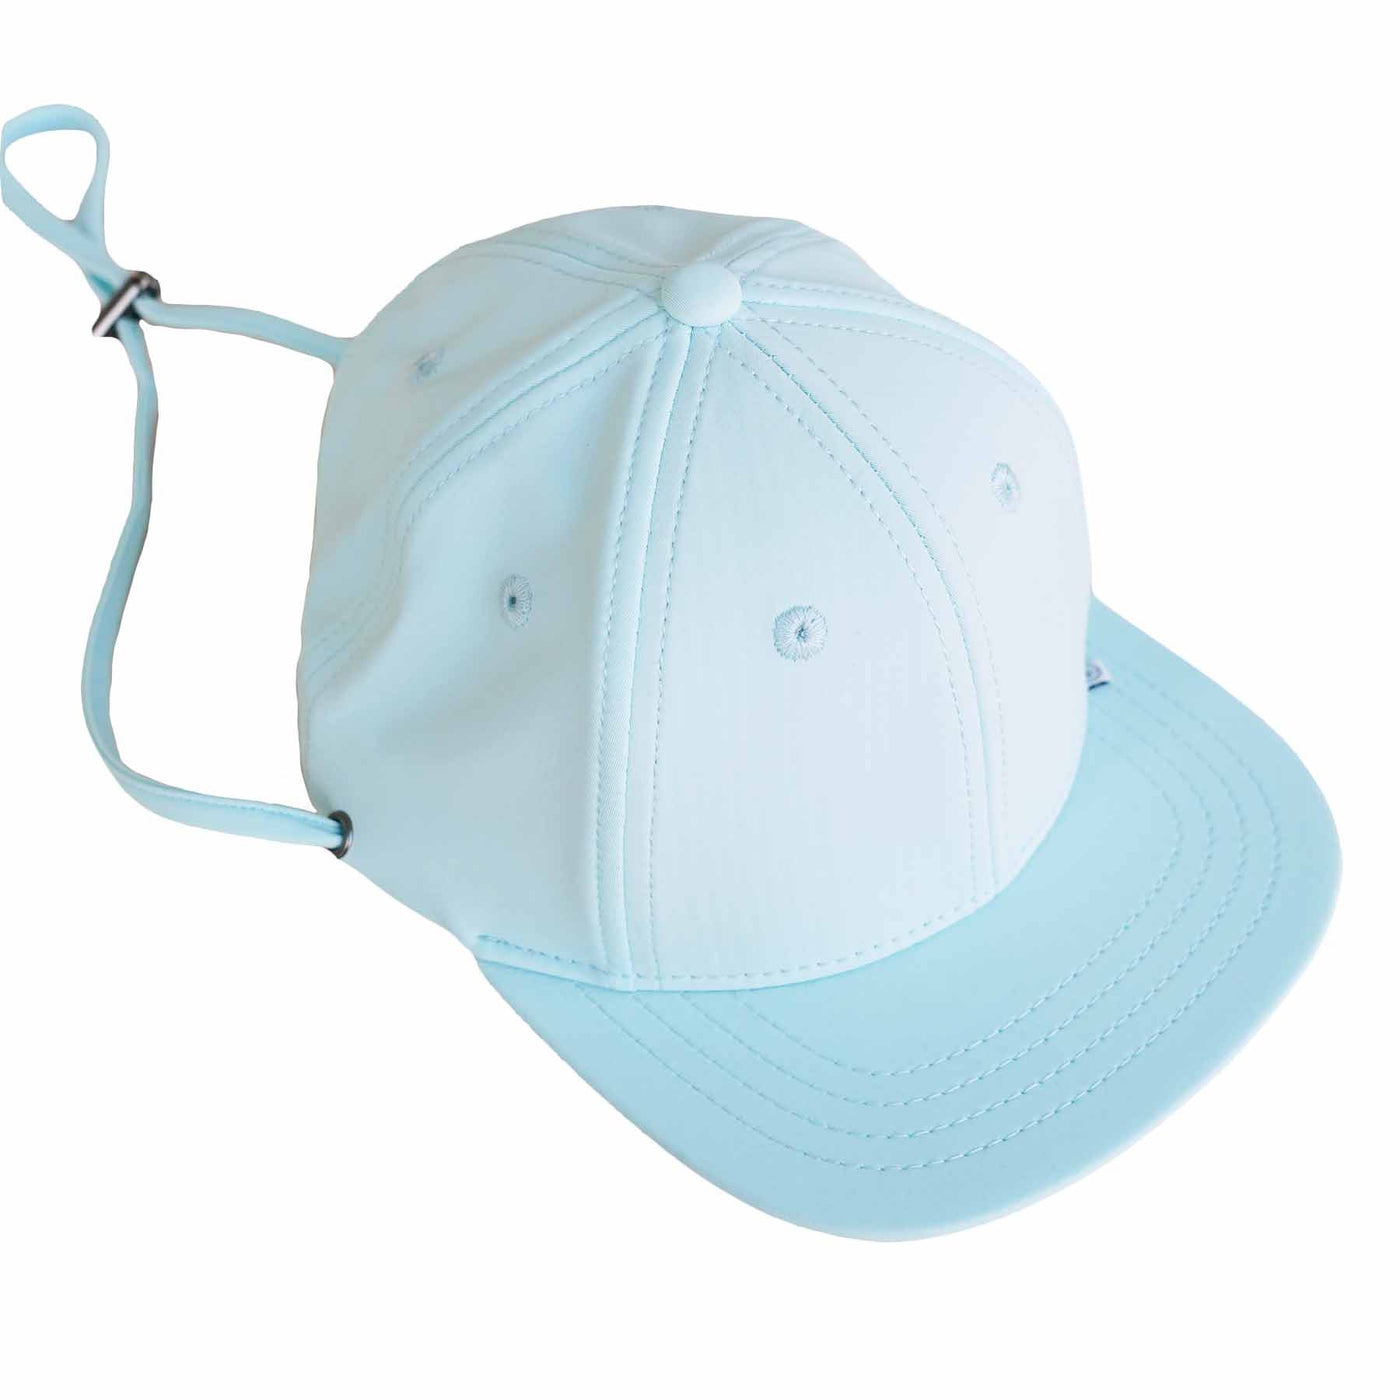 waterproof trucker hat for babies light blue 